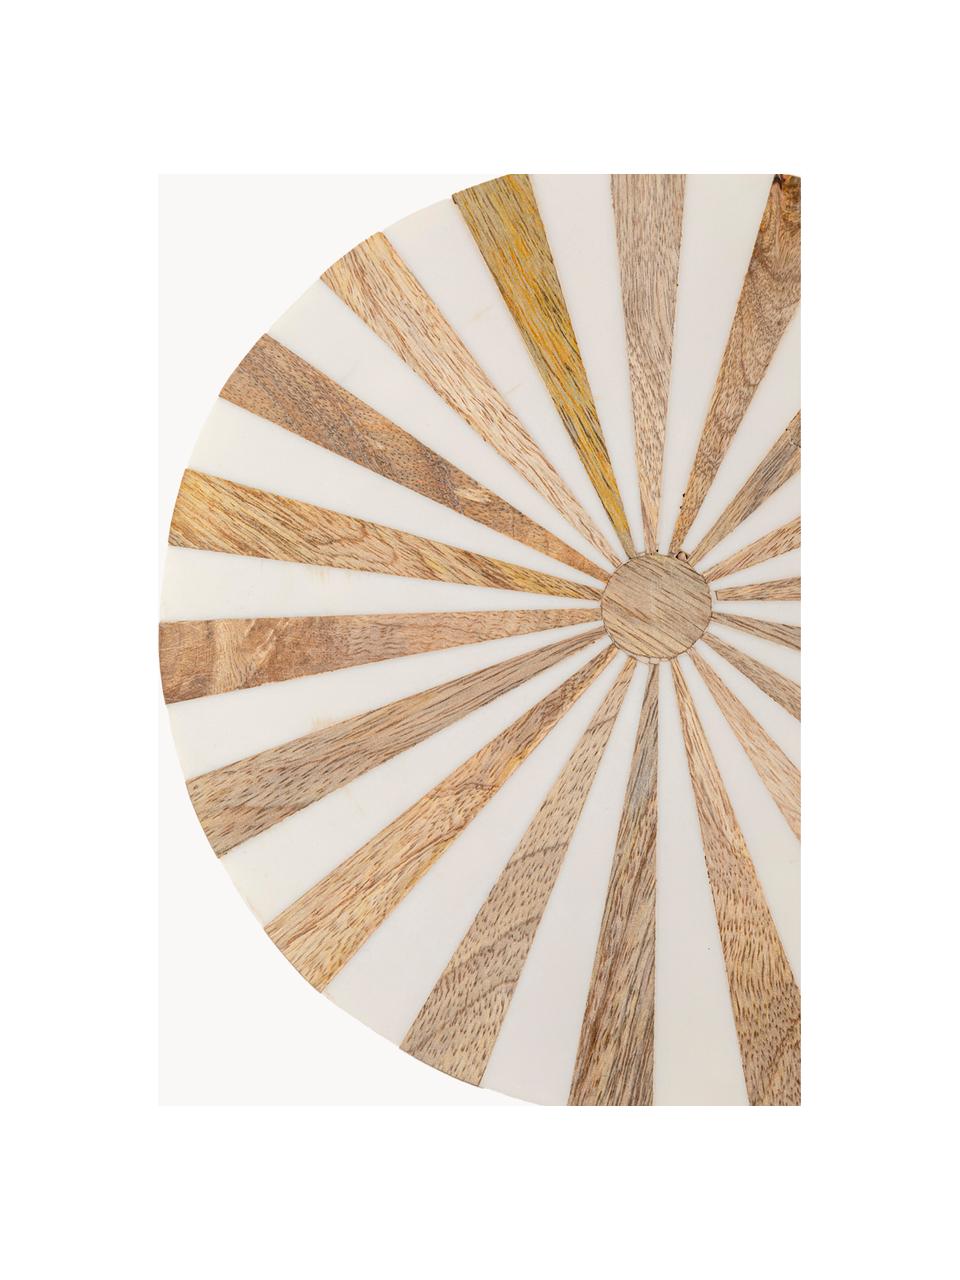 Table d'appoint ronde faite main Domero, Bois, clair laqué, blanc, doré, Ø 25 x haut. 50 cm